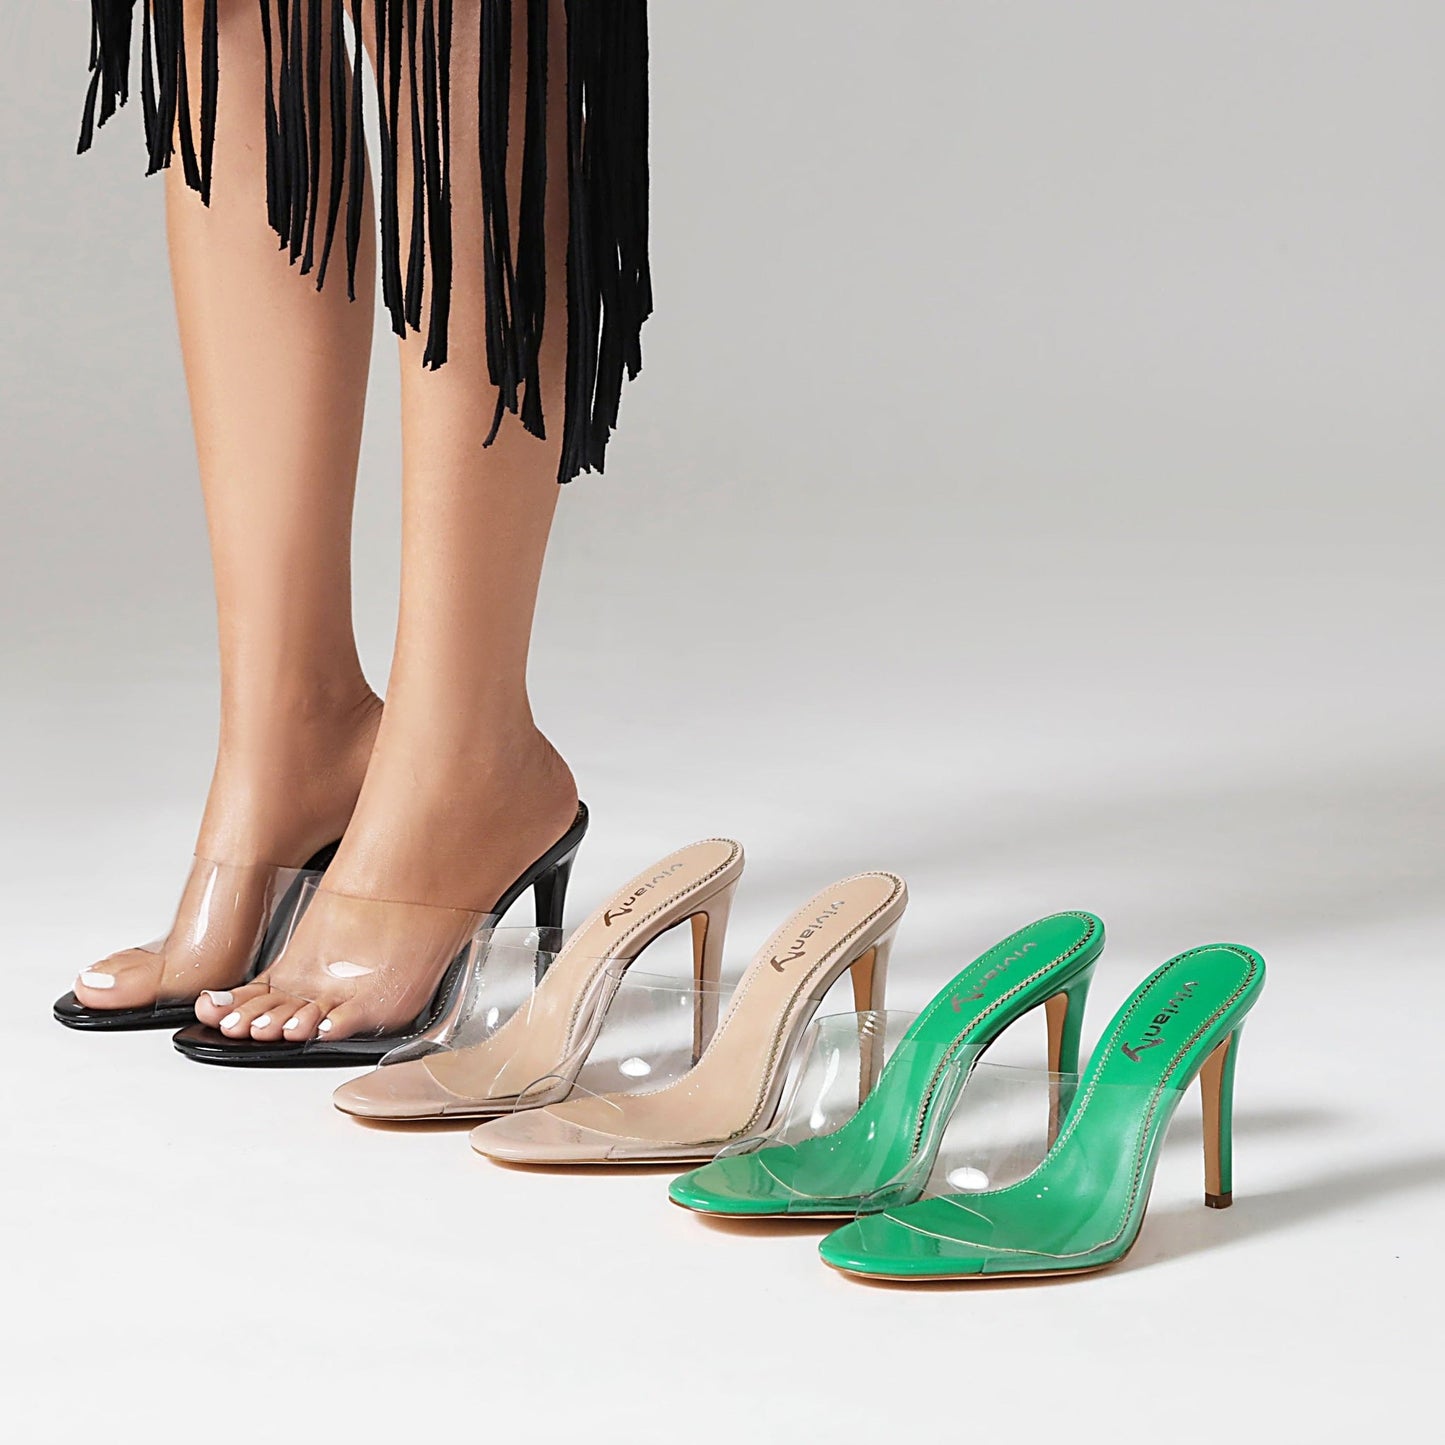 Cristina 100 Strappy Sandals - Vivianly Shoes - Stilettos